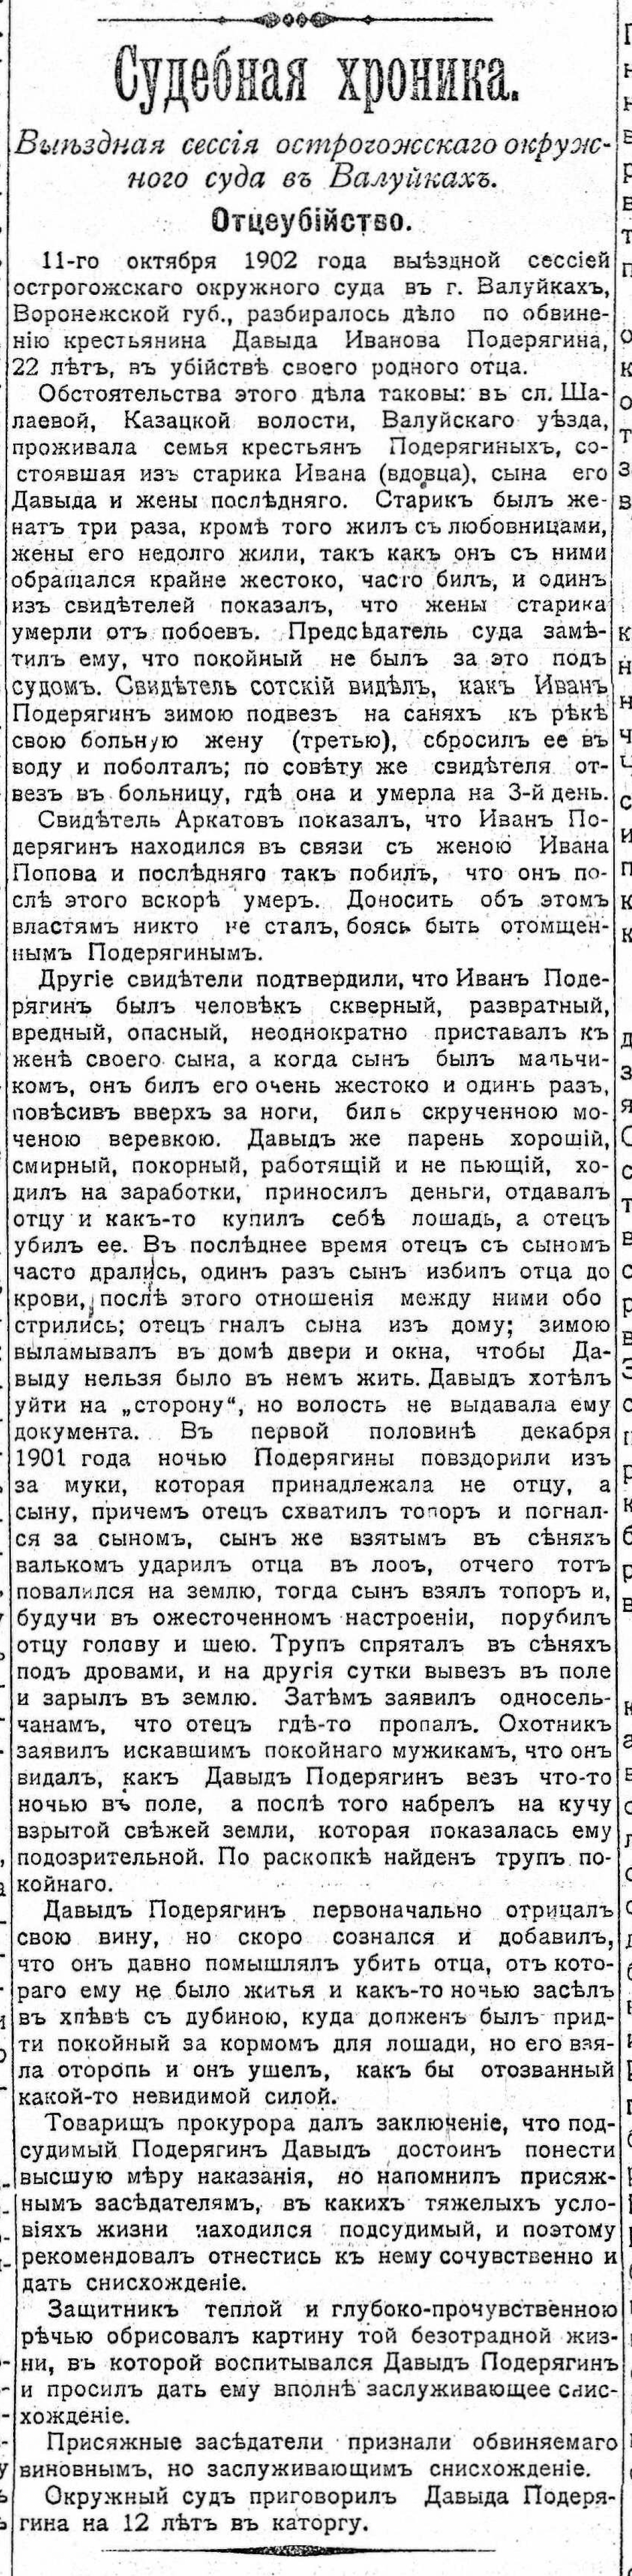 [«Южный край», №7526. — Четверг, 17 (30) октября 1902, страница 4.]